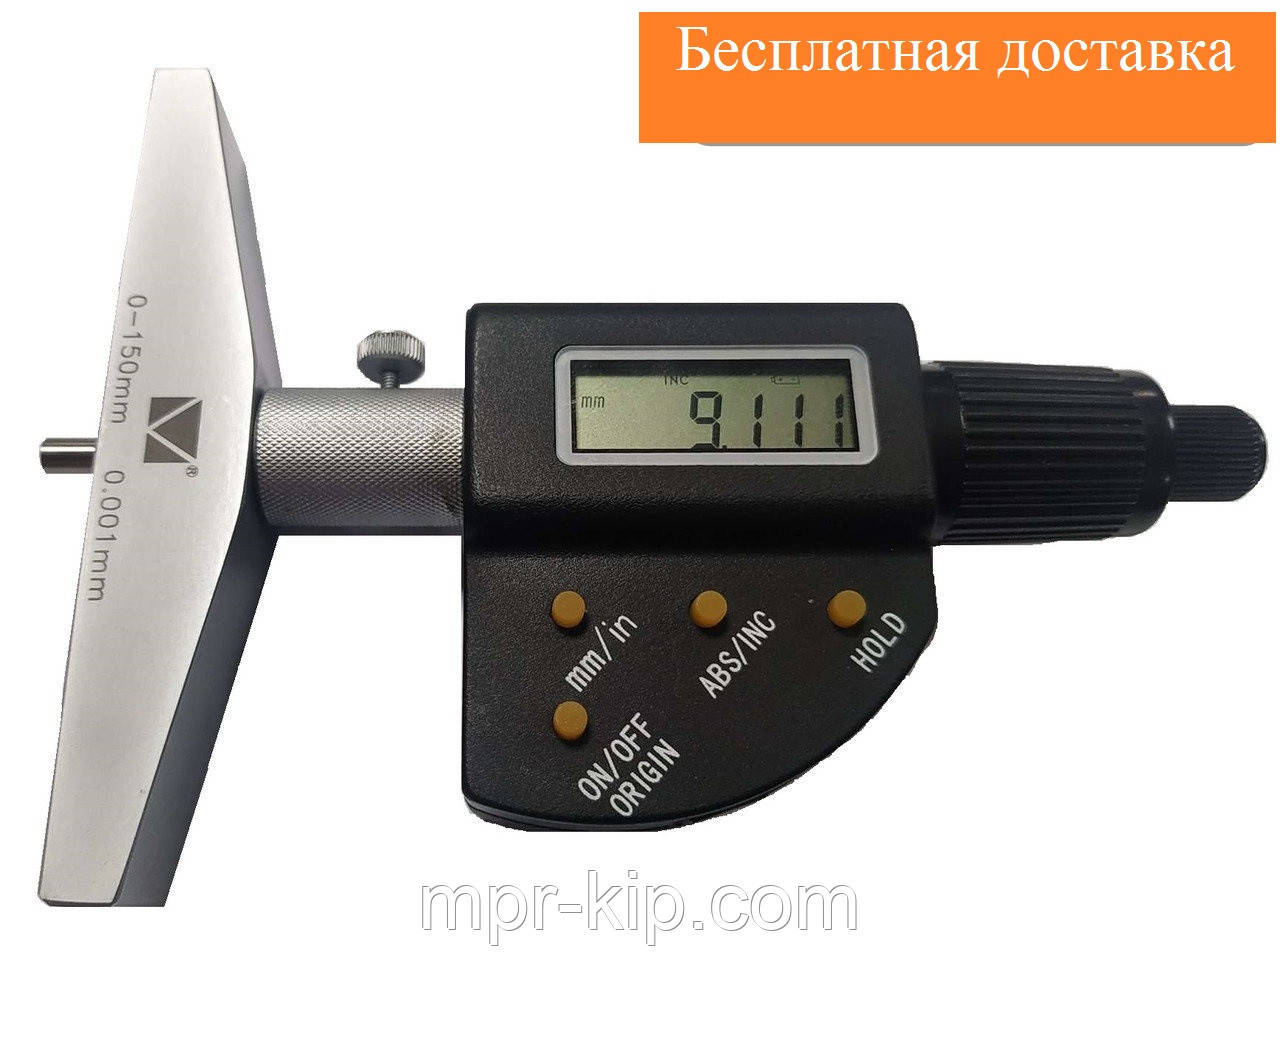 Глибокомір мікрометричний цифровий ГМЦ-300 (0-300 мм; 0,001 мм; ±0,008 мм) Мікротех